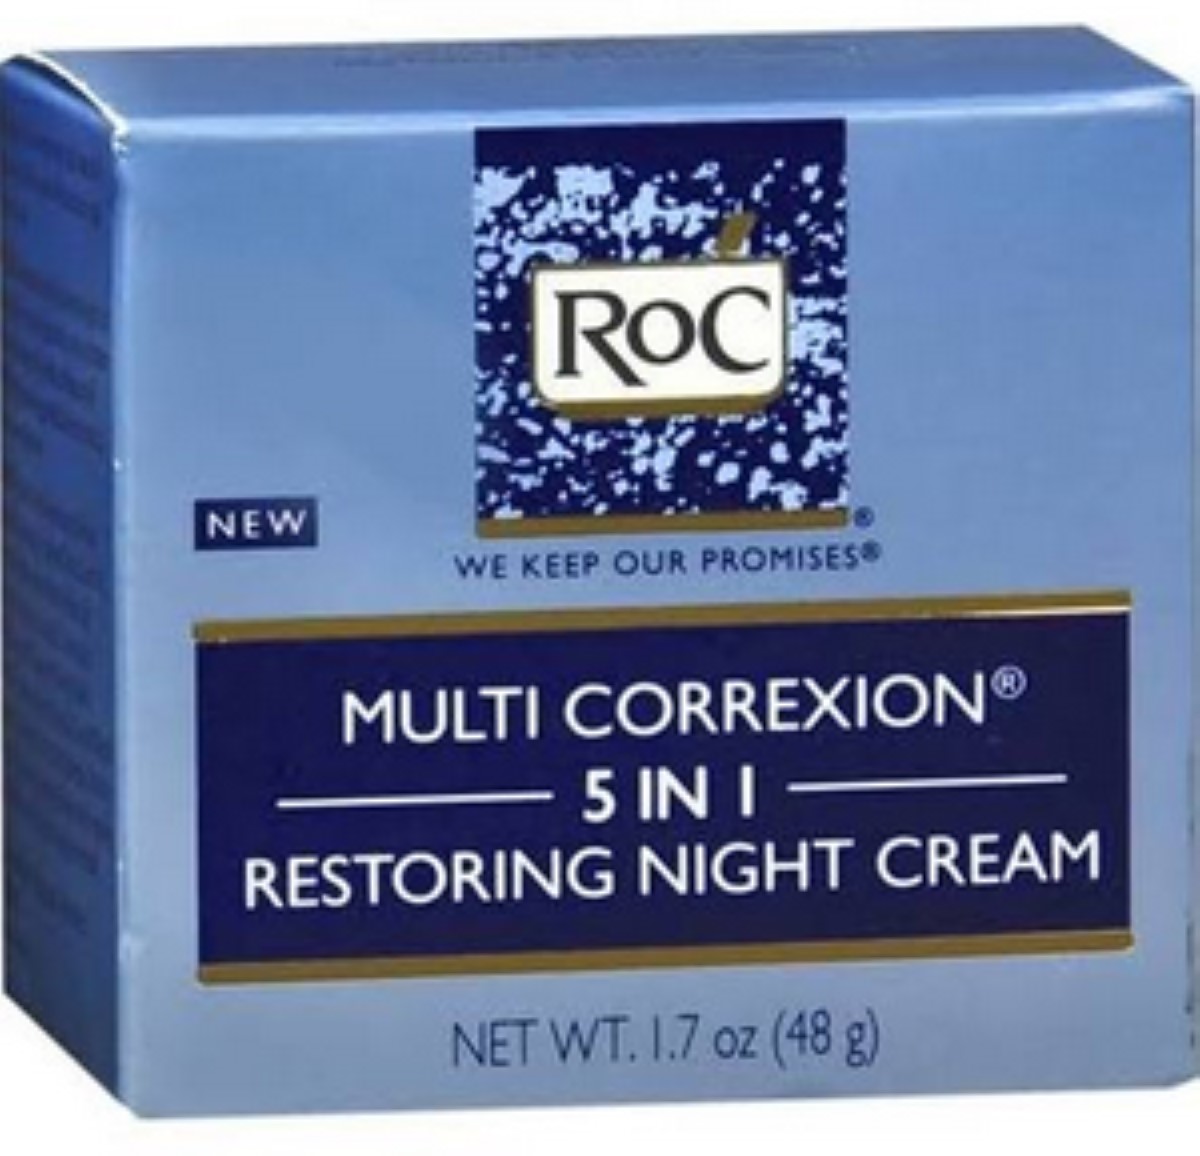 RoC Multi Correxion 5 in 1 Restoring Night Cream, 1.7 oz (Pack of 2) - image 1 of 2